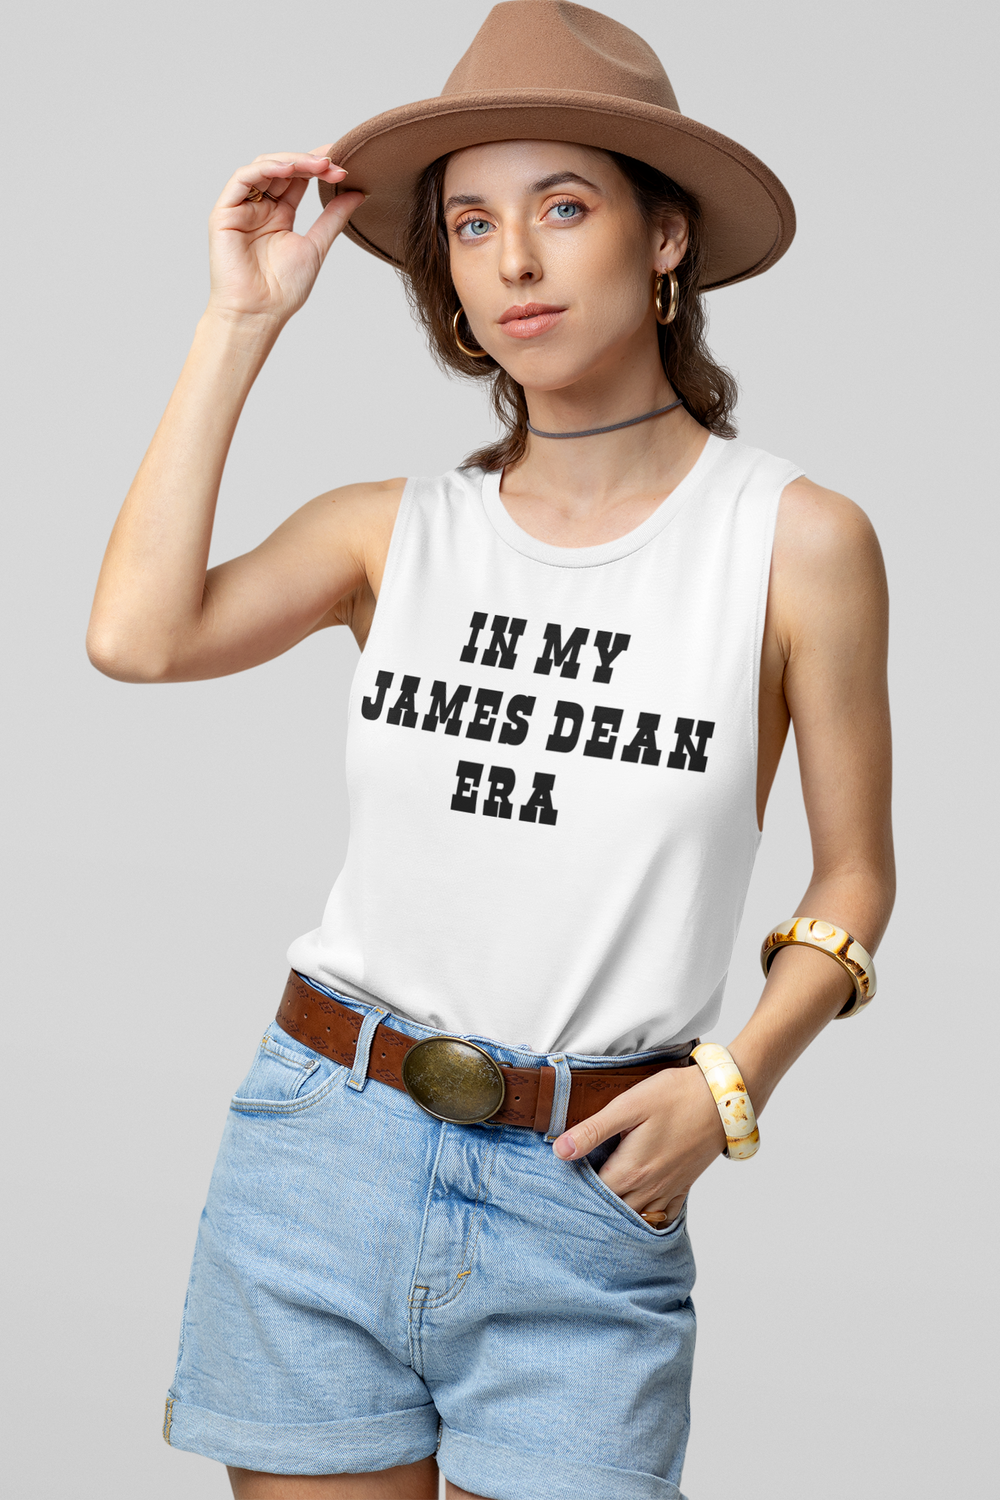 In My James Dean Era Women's Muscle Tank Top